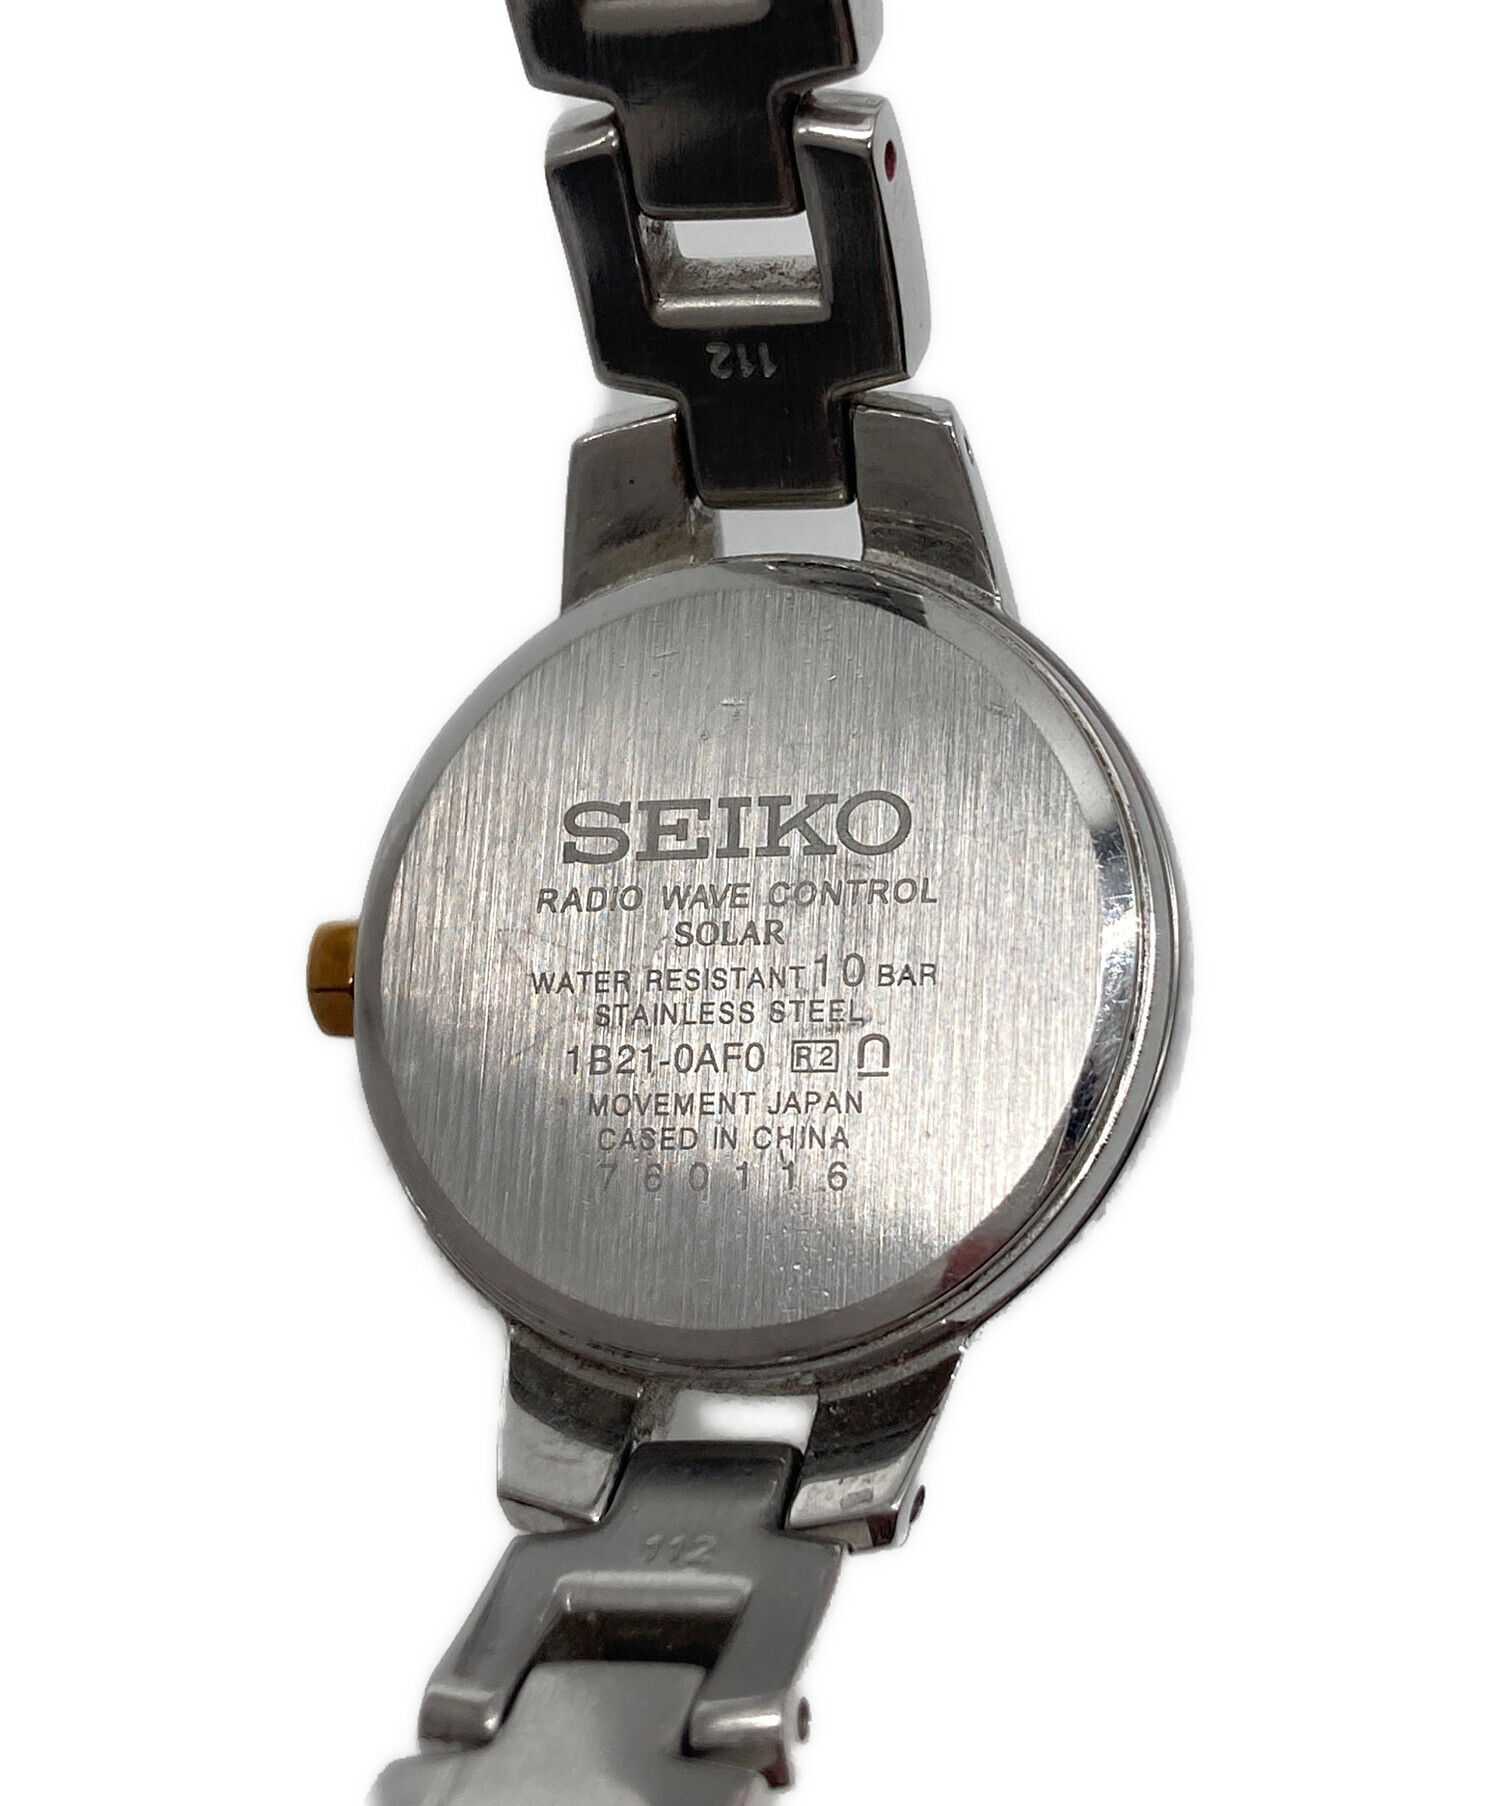 SEIKO (セイコー) 1B21-0AF0